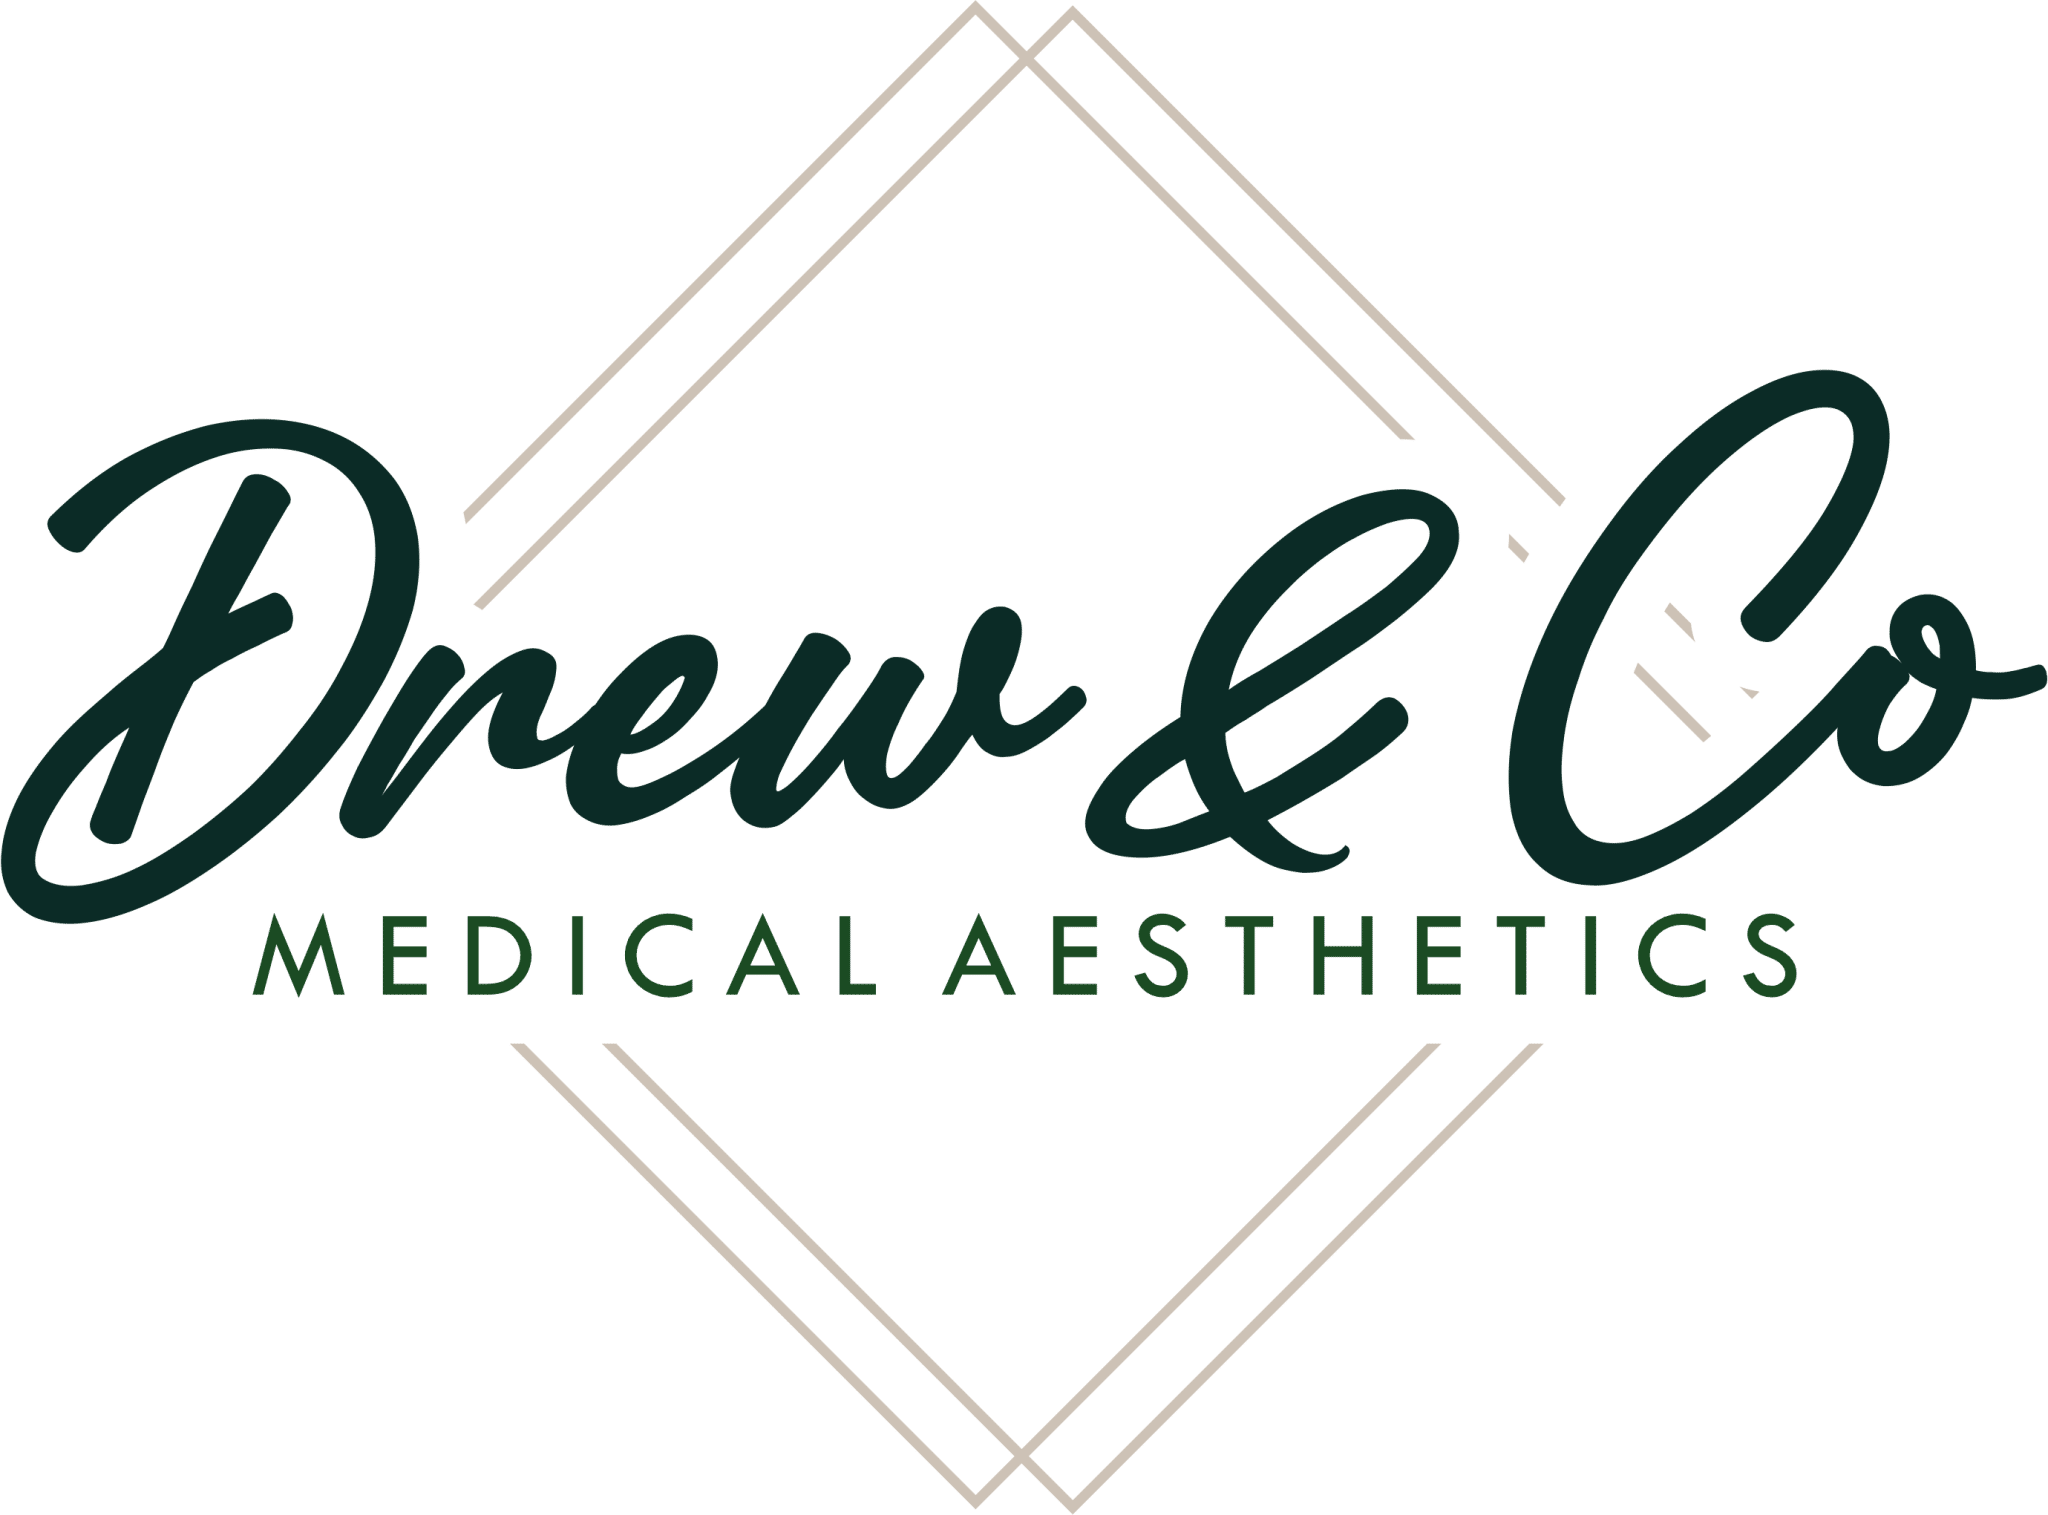 Drew & Co Medical Aesthetics